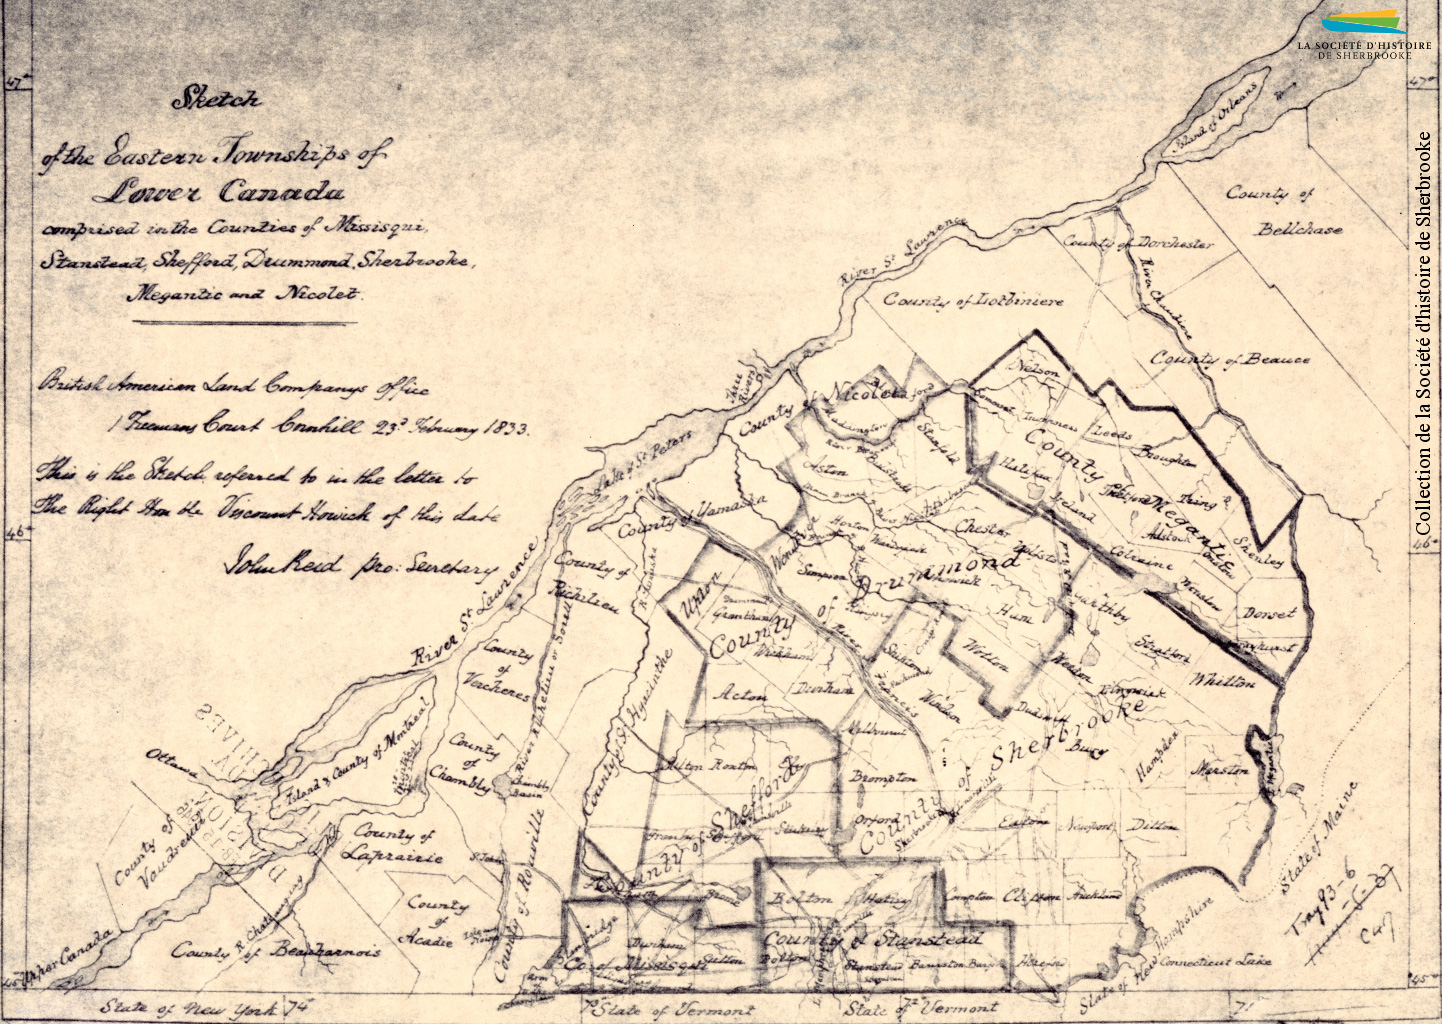 Un dessin des Cantons-de-l’Est et de ses différents comtés, produit par la BALCo en 1833. À gauche et en haut on voit le fleuve Saint-Laurent, et les comtés limitrophes des Cantons-de-l’Est.